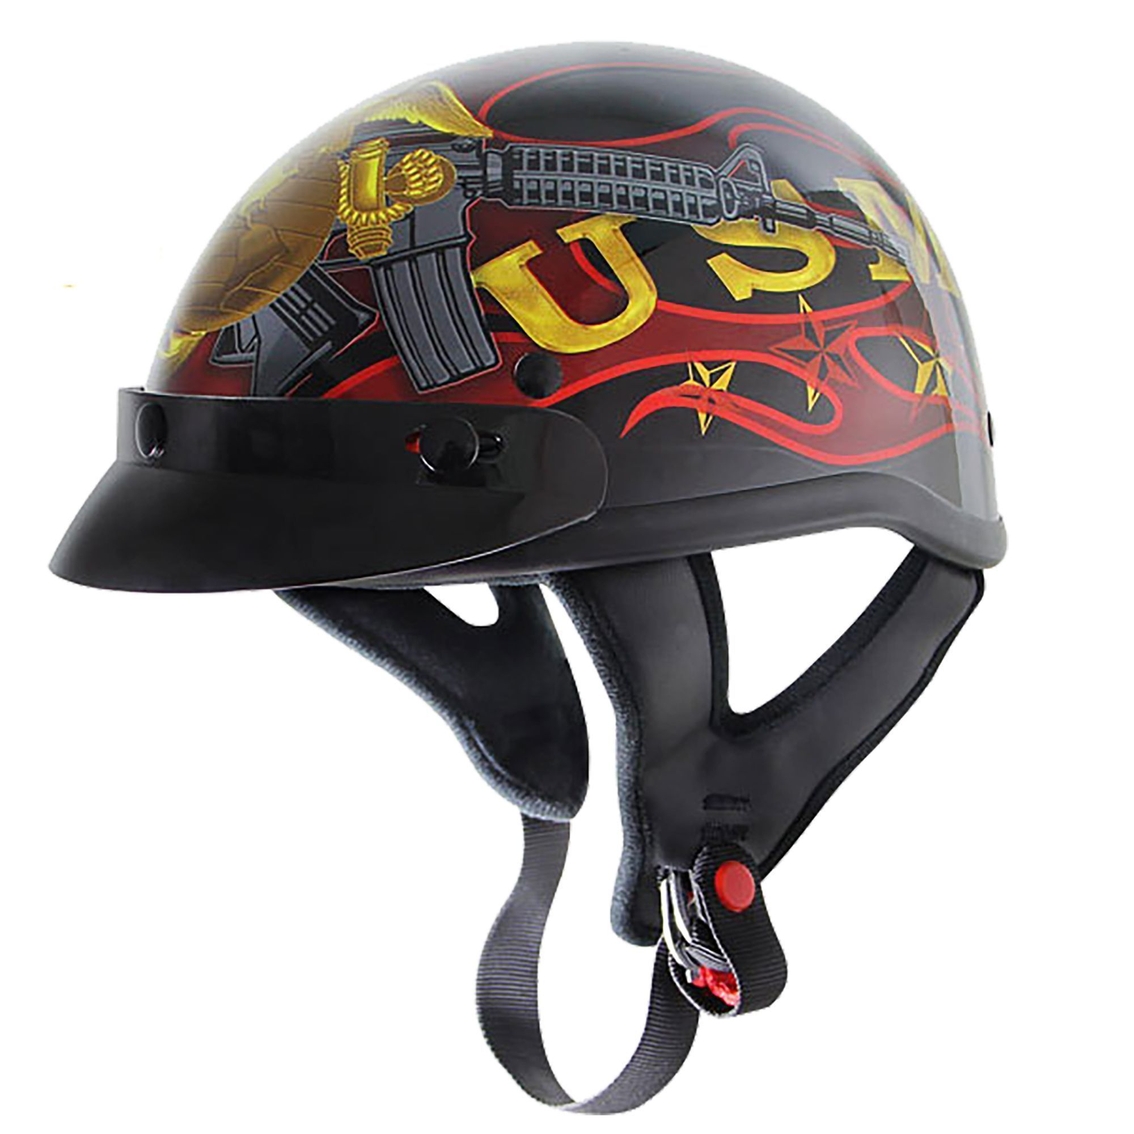 US Marines Motorcycle Helmet - Image 2 of 2